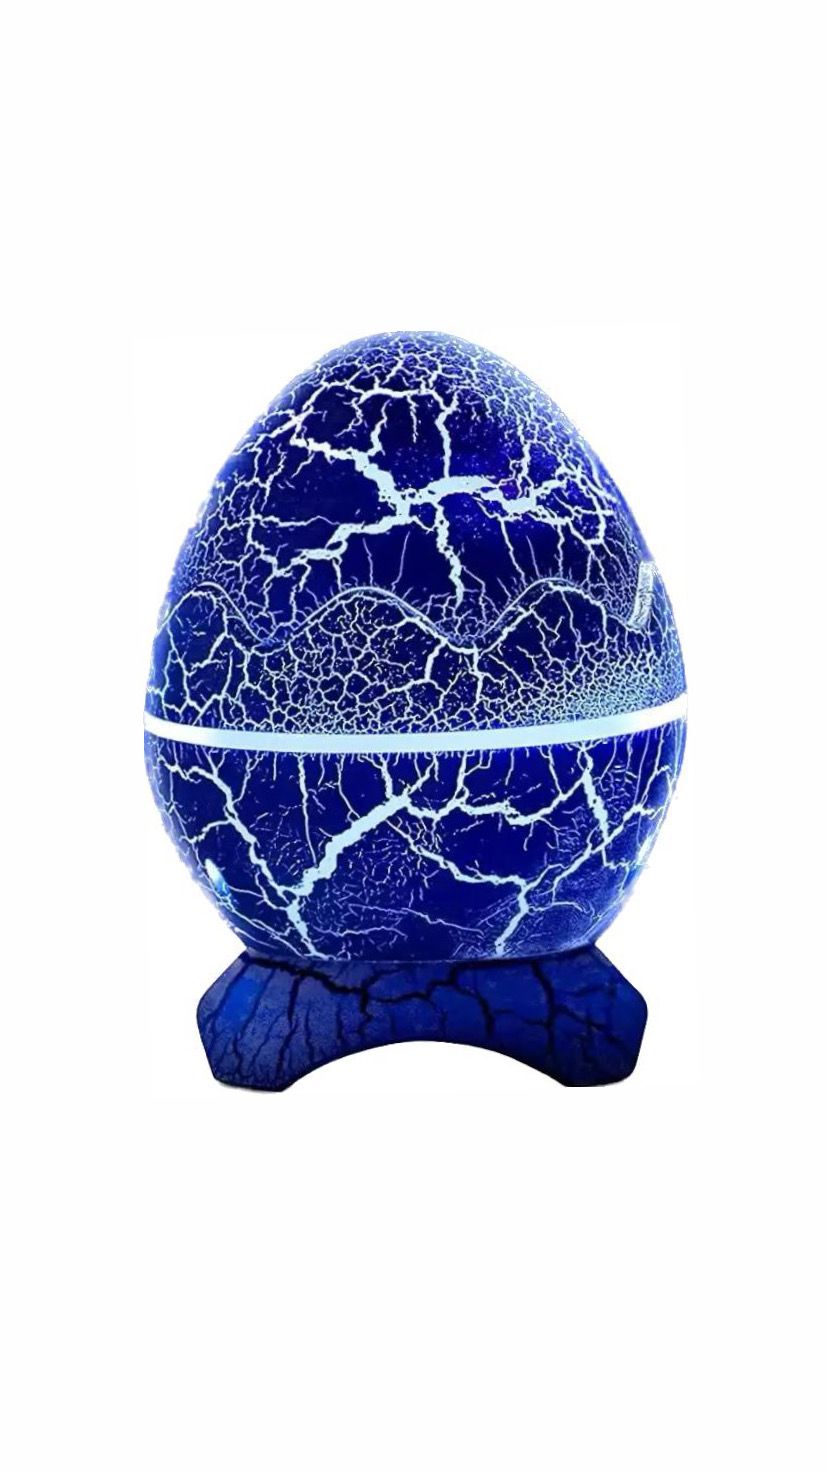 Ночник-проектор яйцо дракона с bluetooth синий 3кн supernowa ночник проектор forall яйцо дракона звездное небо музыкальная колонка с bluetooth